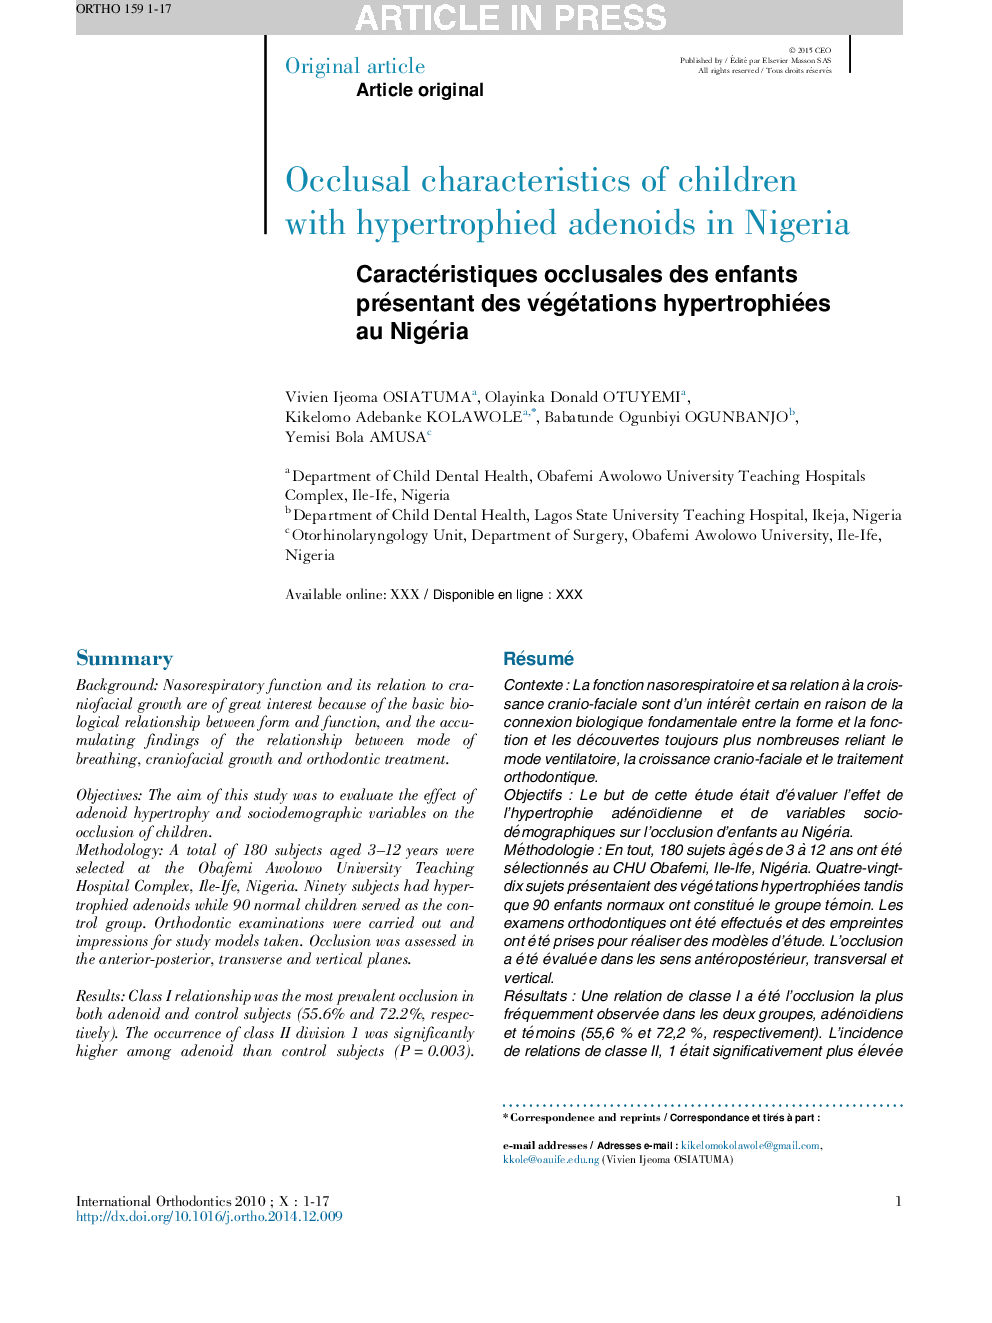 خصوصیات اکلوزالی کودکان مبتلا به آدنوئیدهای هیپرتروفی در نیجریه 